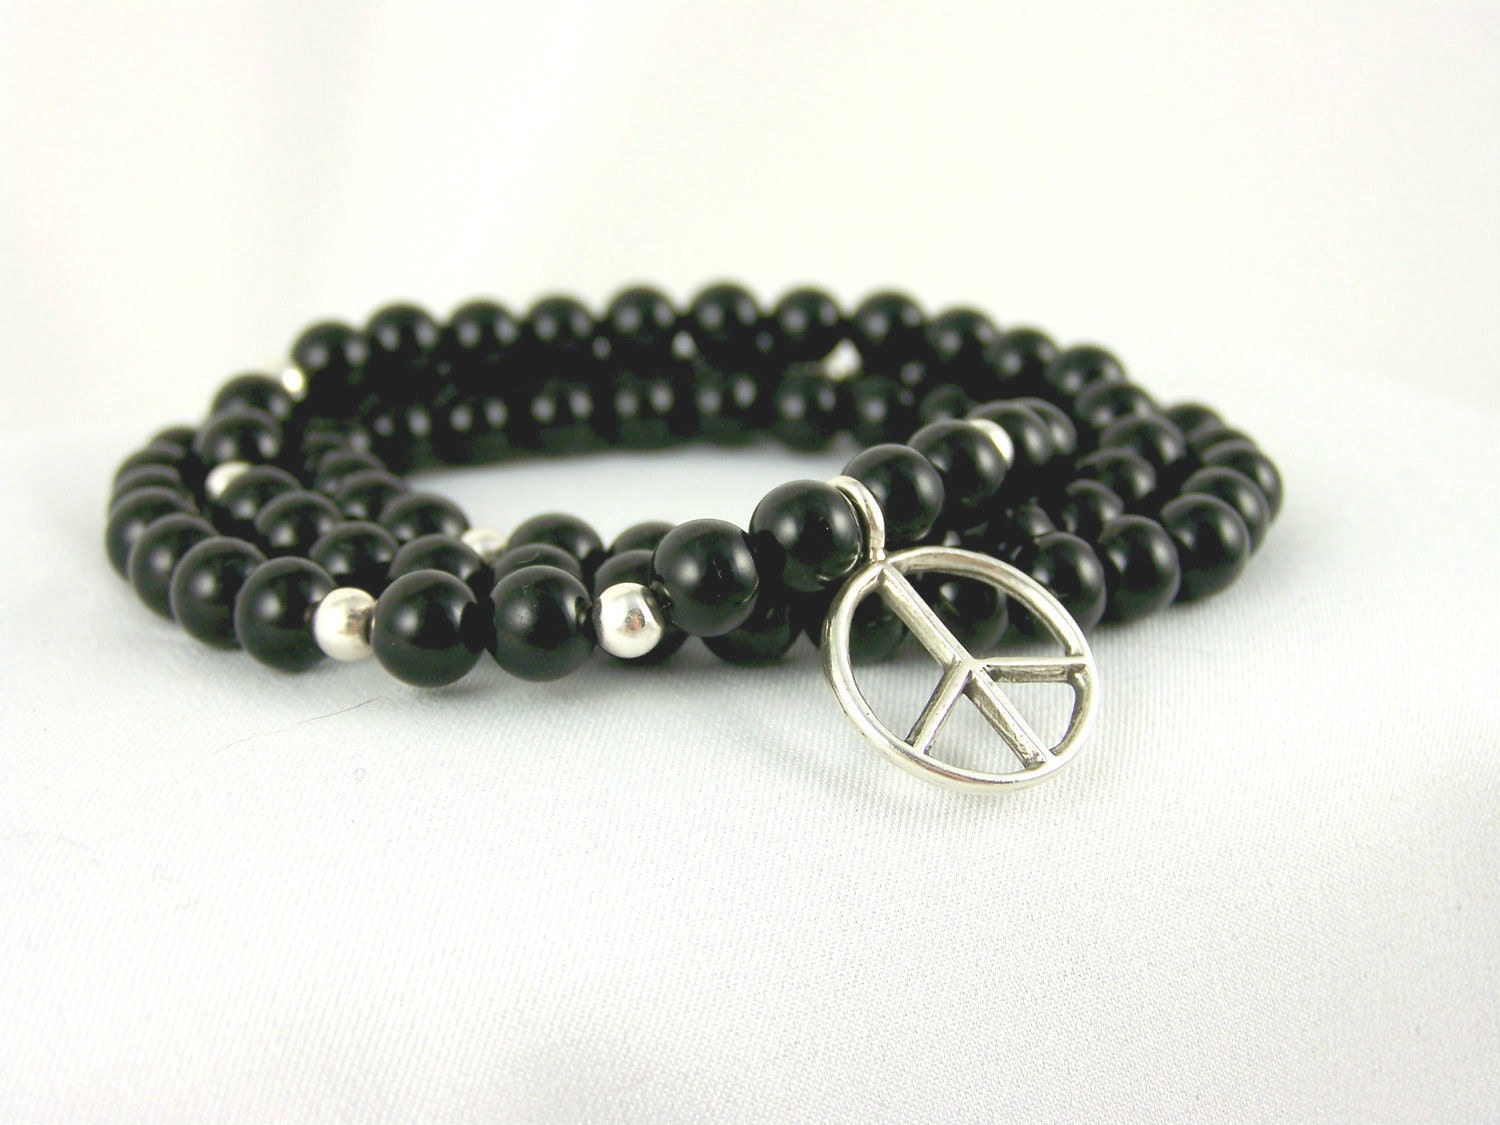 Stretch Bracelet, Black Onyx Necklace with Sterling Silver Peace Charm, Meditation Bracelet, Stretchy Bracelet